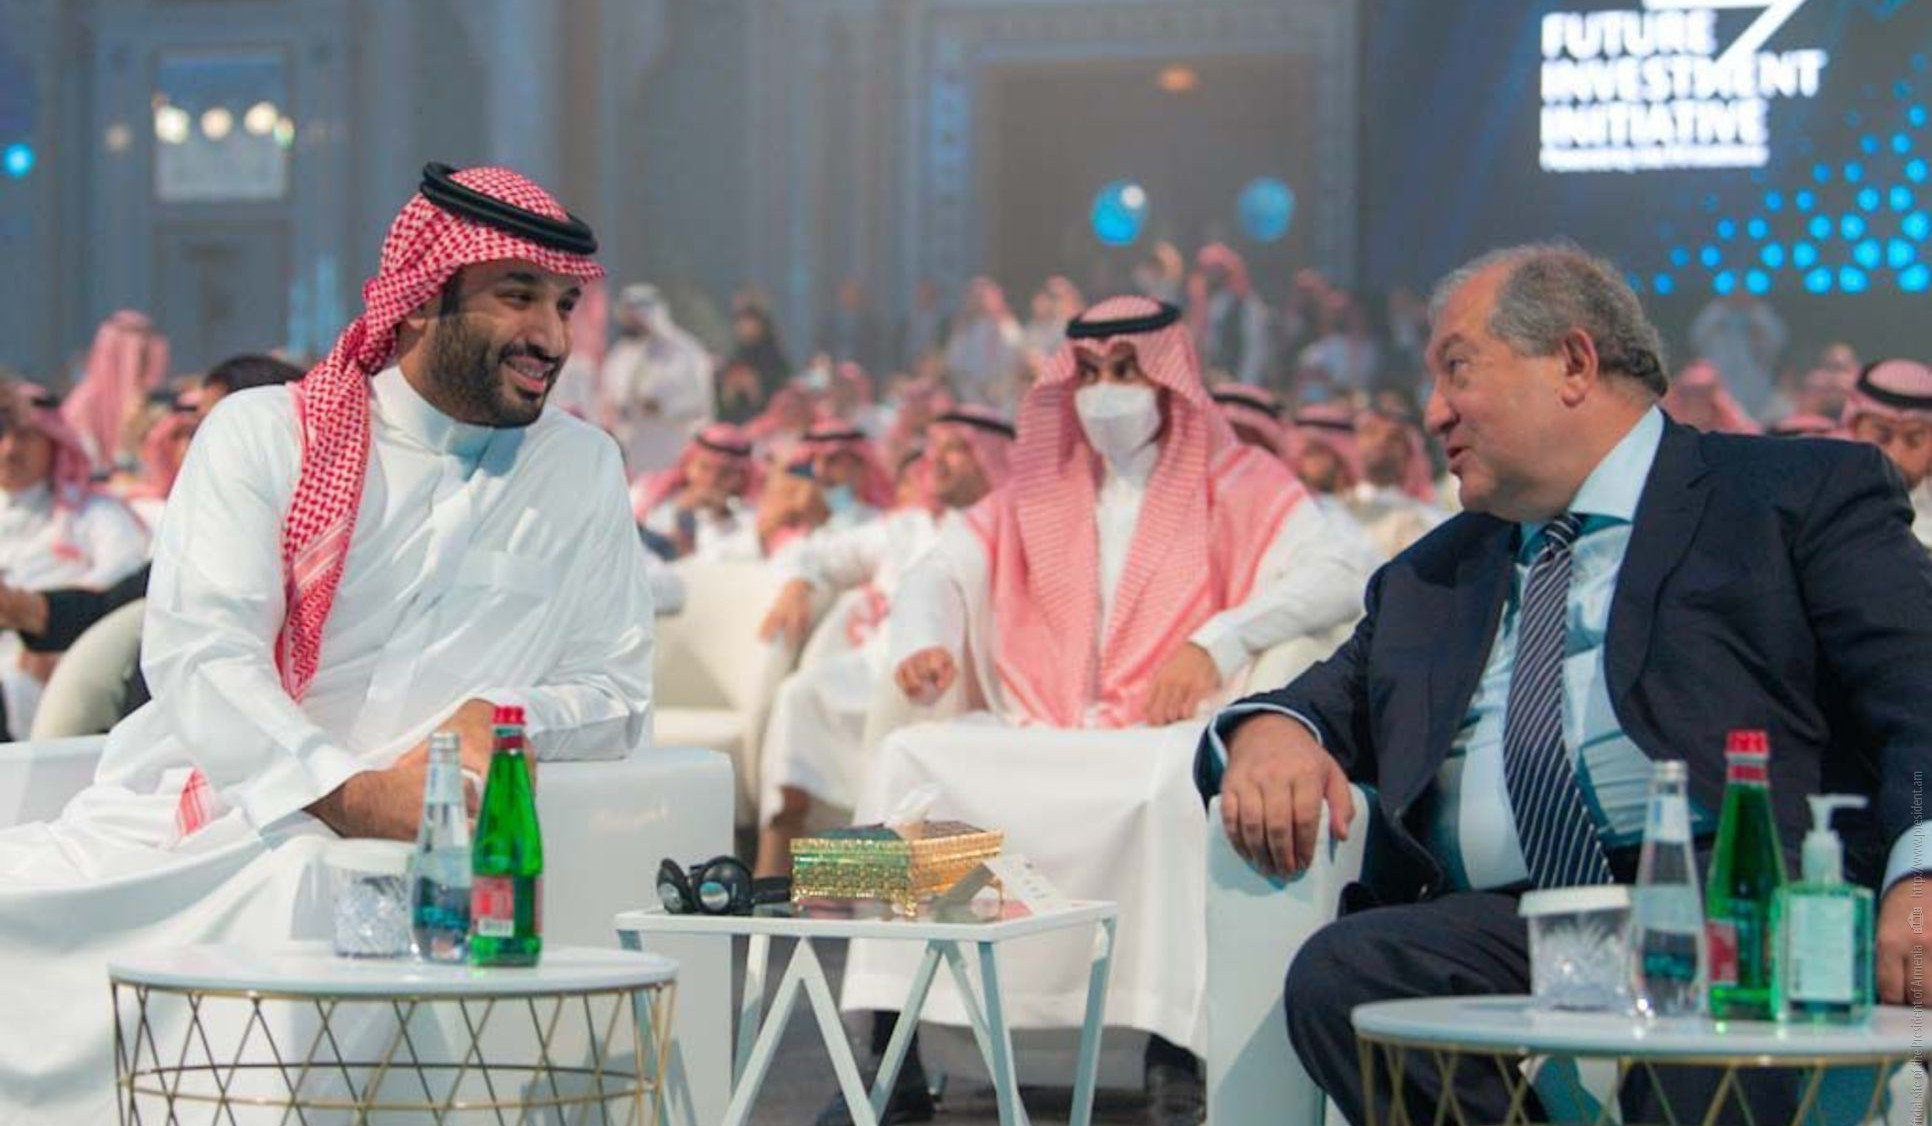 Богатые исторические контакты между двумя народами являются хорошей основой для построения нацеленных на будущее межгосударственных отношений: беседа президента Саркисяна с наследным принцем Саудовской Аравии